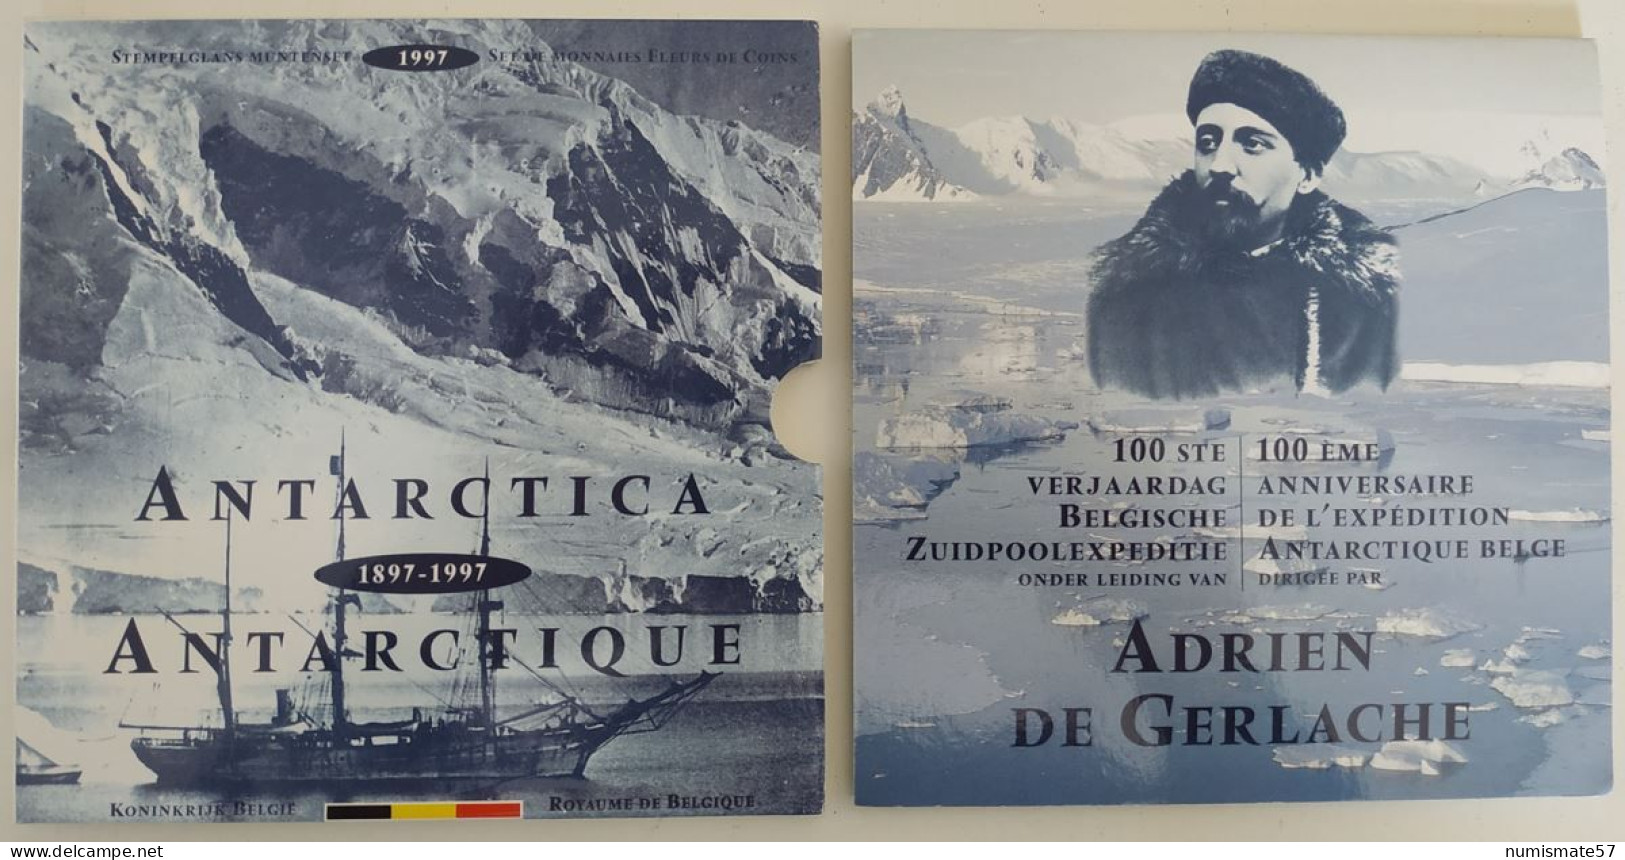 Coffret FDC BELGIQUE - Antartique - Antartica - 1997- 100ème Anniversaire De L'Expédition Belge - Adrien De Gerlache - FDC, BU, Proofs & Presentation Cases